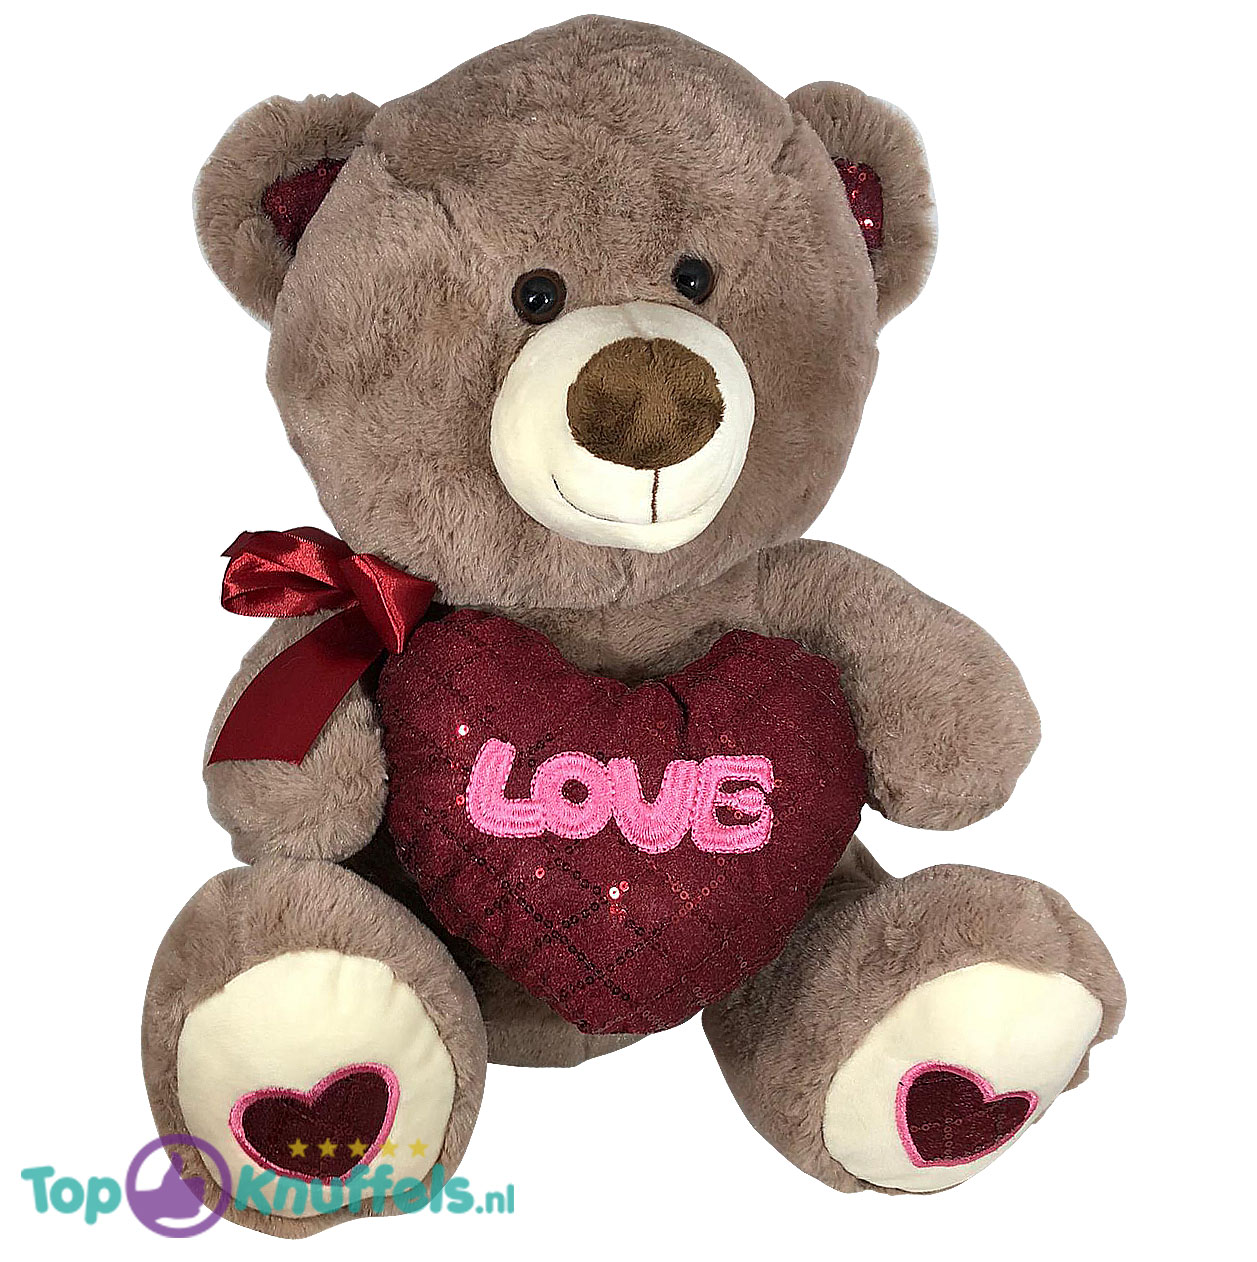 Observeer verkiezen Citroen Teddybeer met hart 'Love' (Donkerbruin) 26cm kopen? Topknuffels.nl